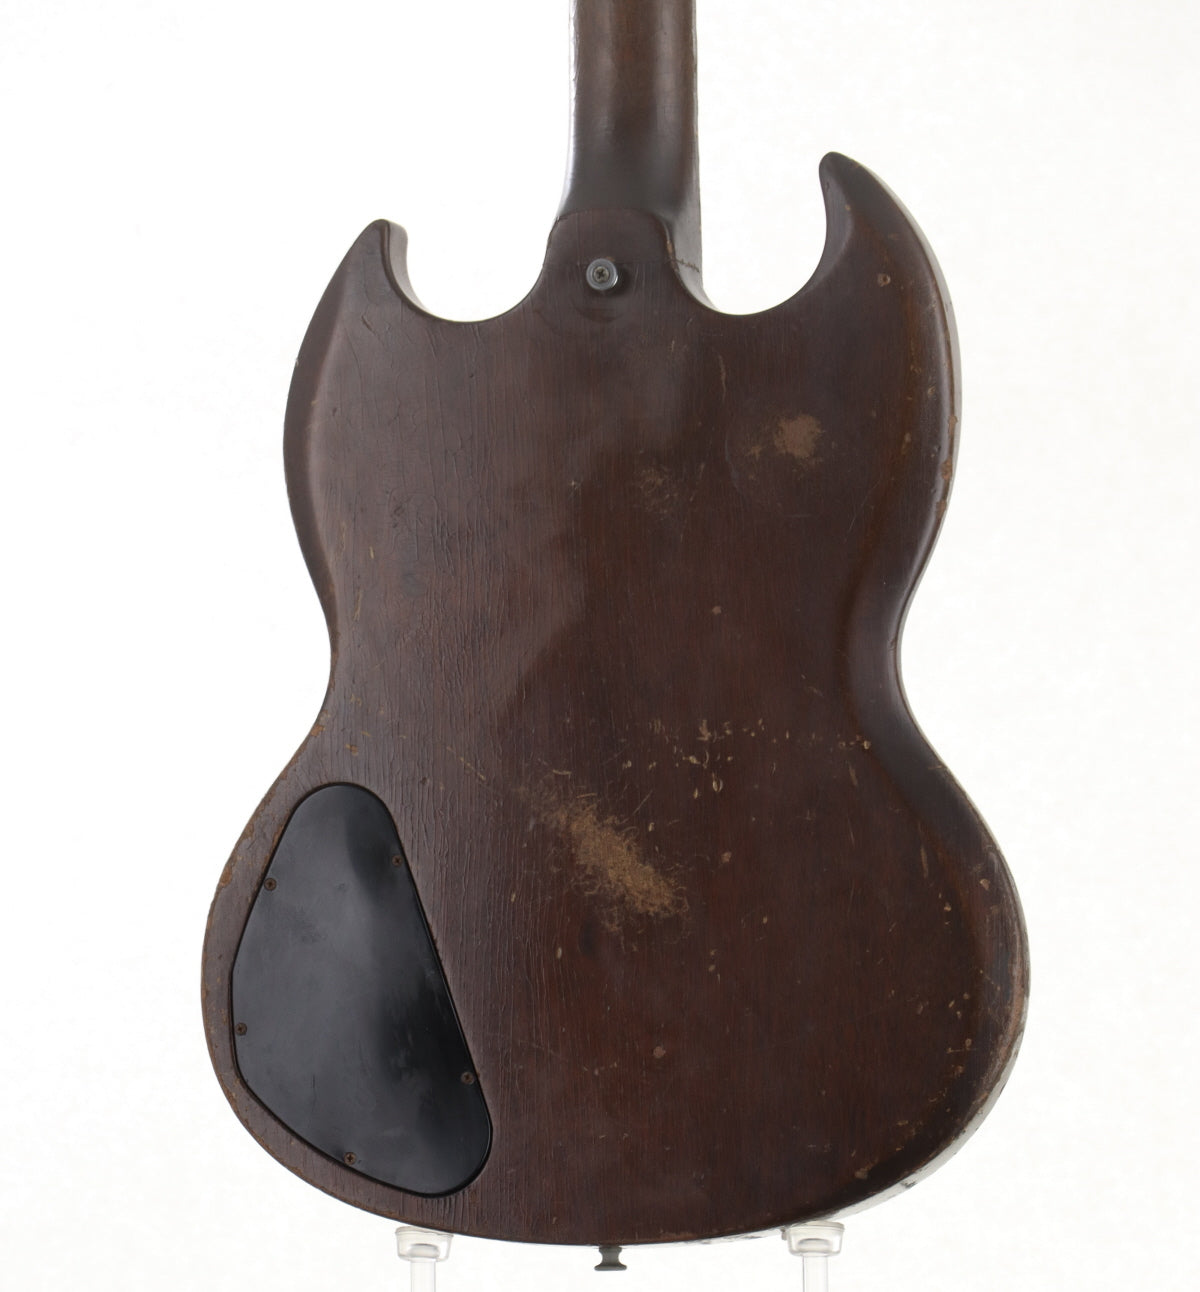 [SN 813078] USED Gibson USA / 1969 EB-0 Walnut [10]